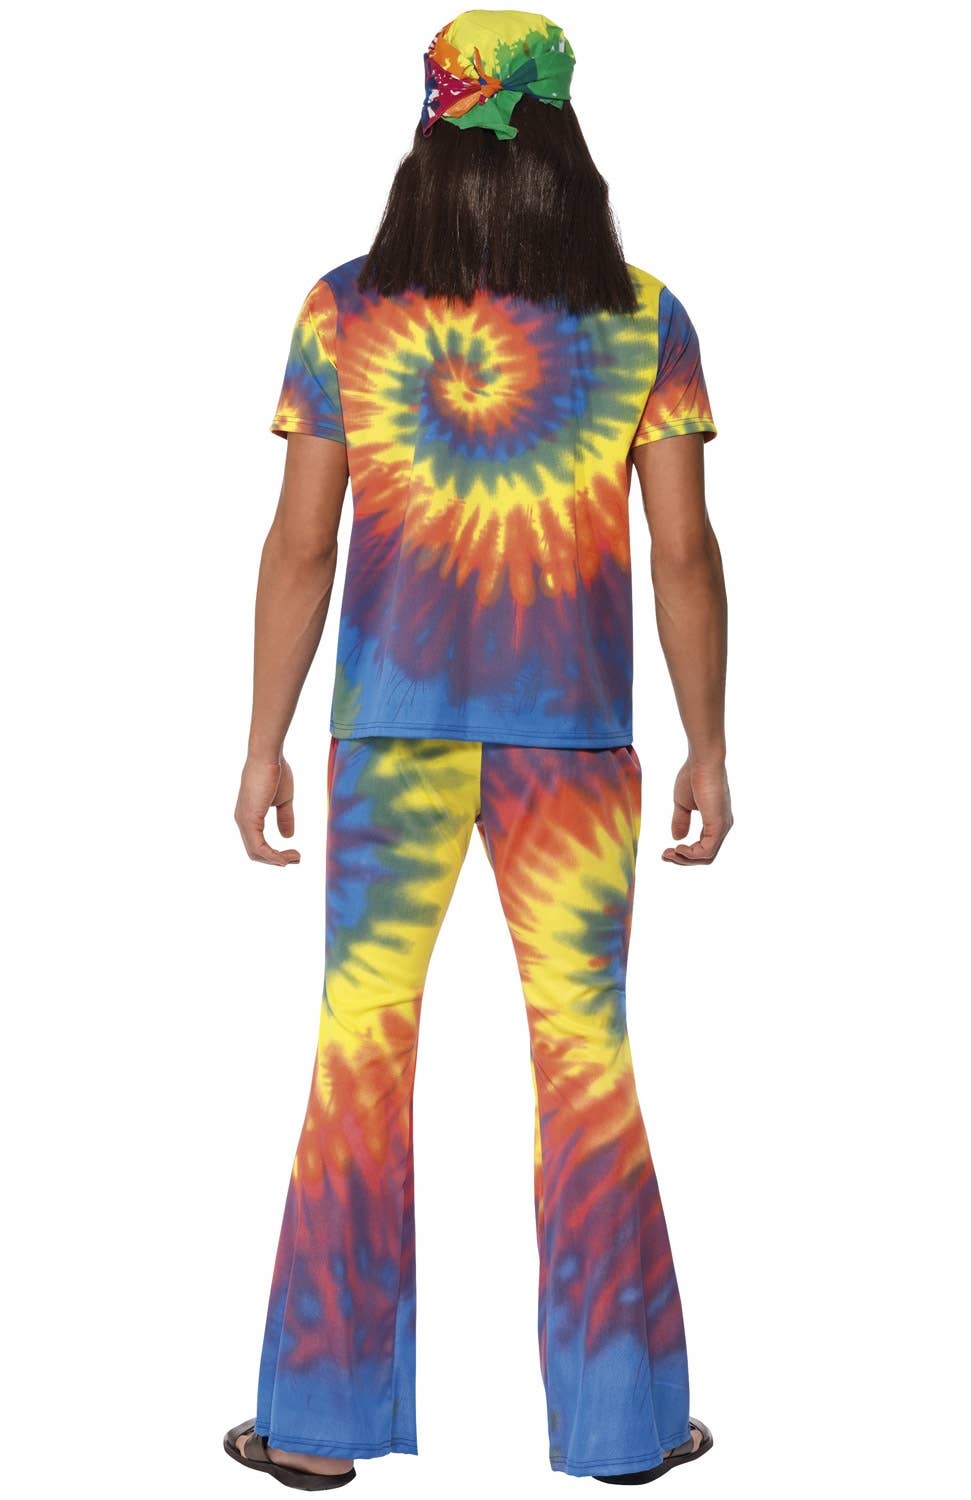 Men's 1970's Groovy Tie-Dye Hippie Costume Image 4